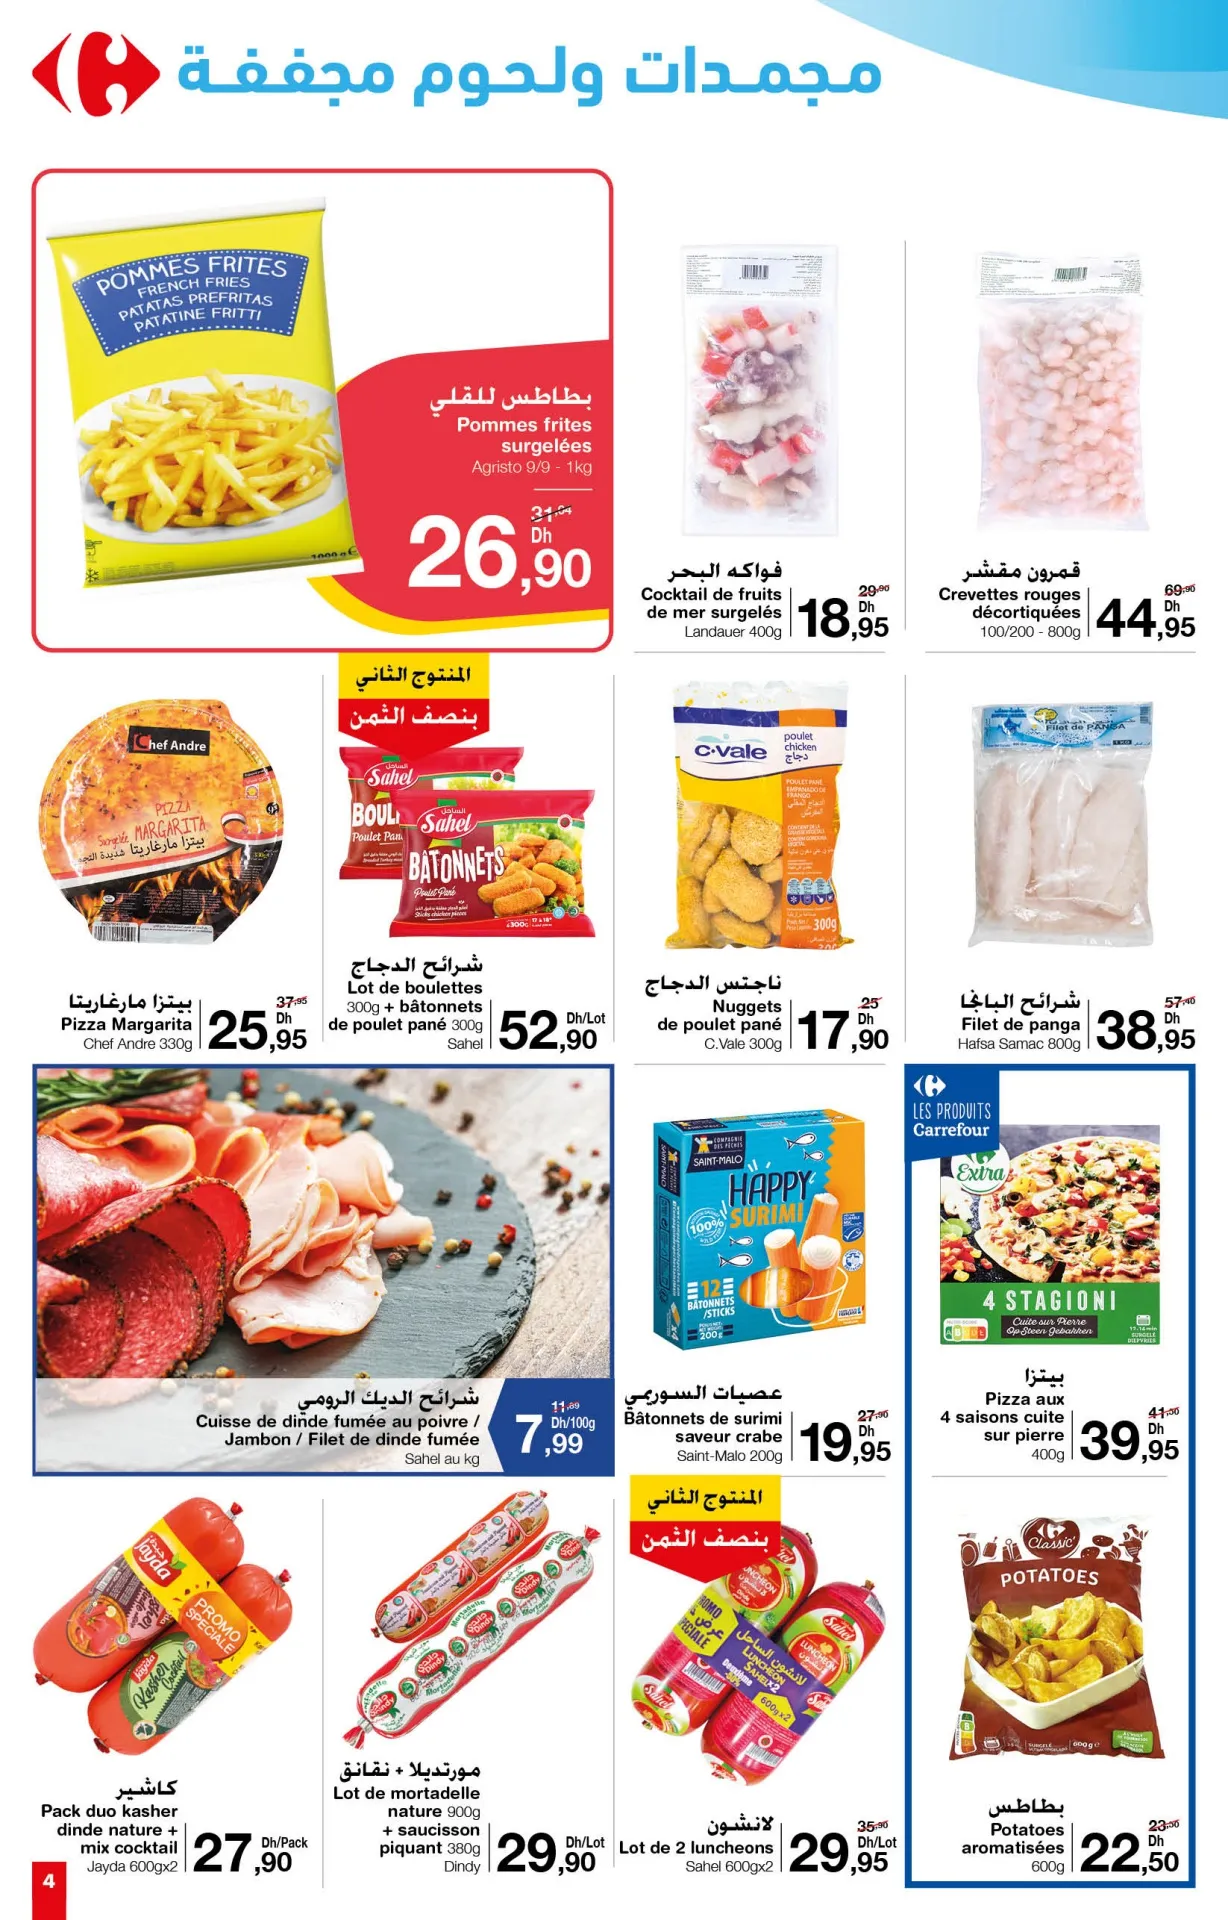 Catalogue Carrefour février